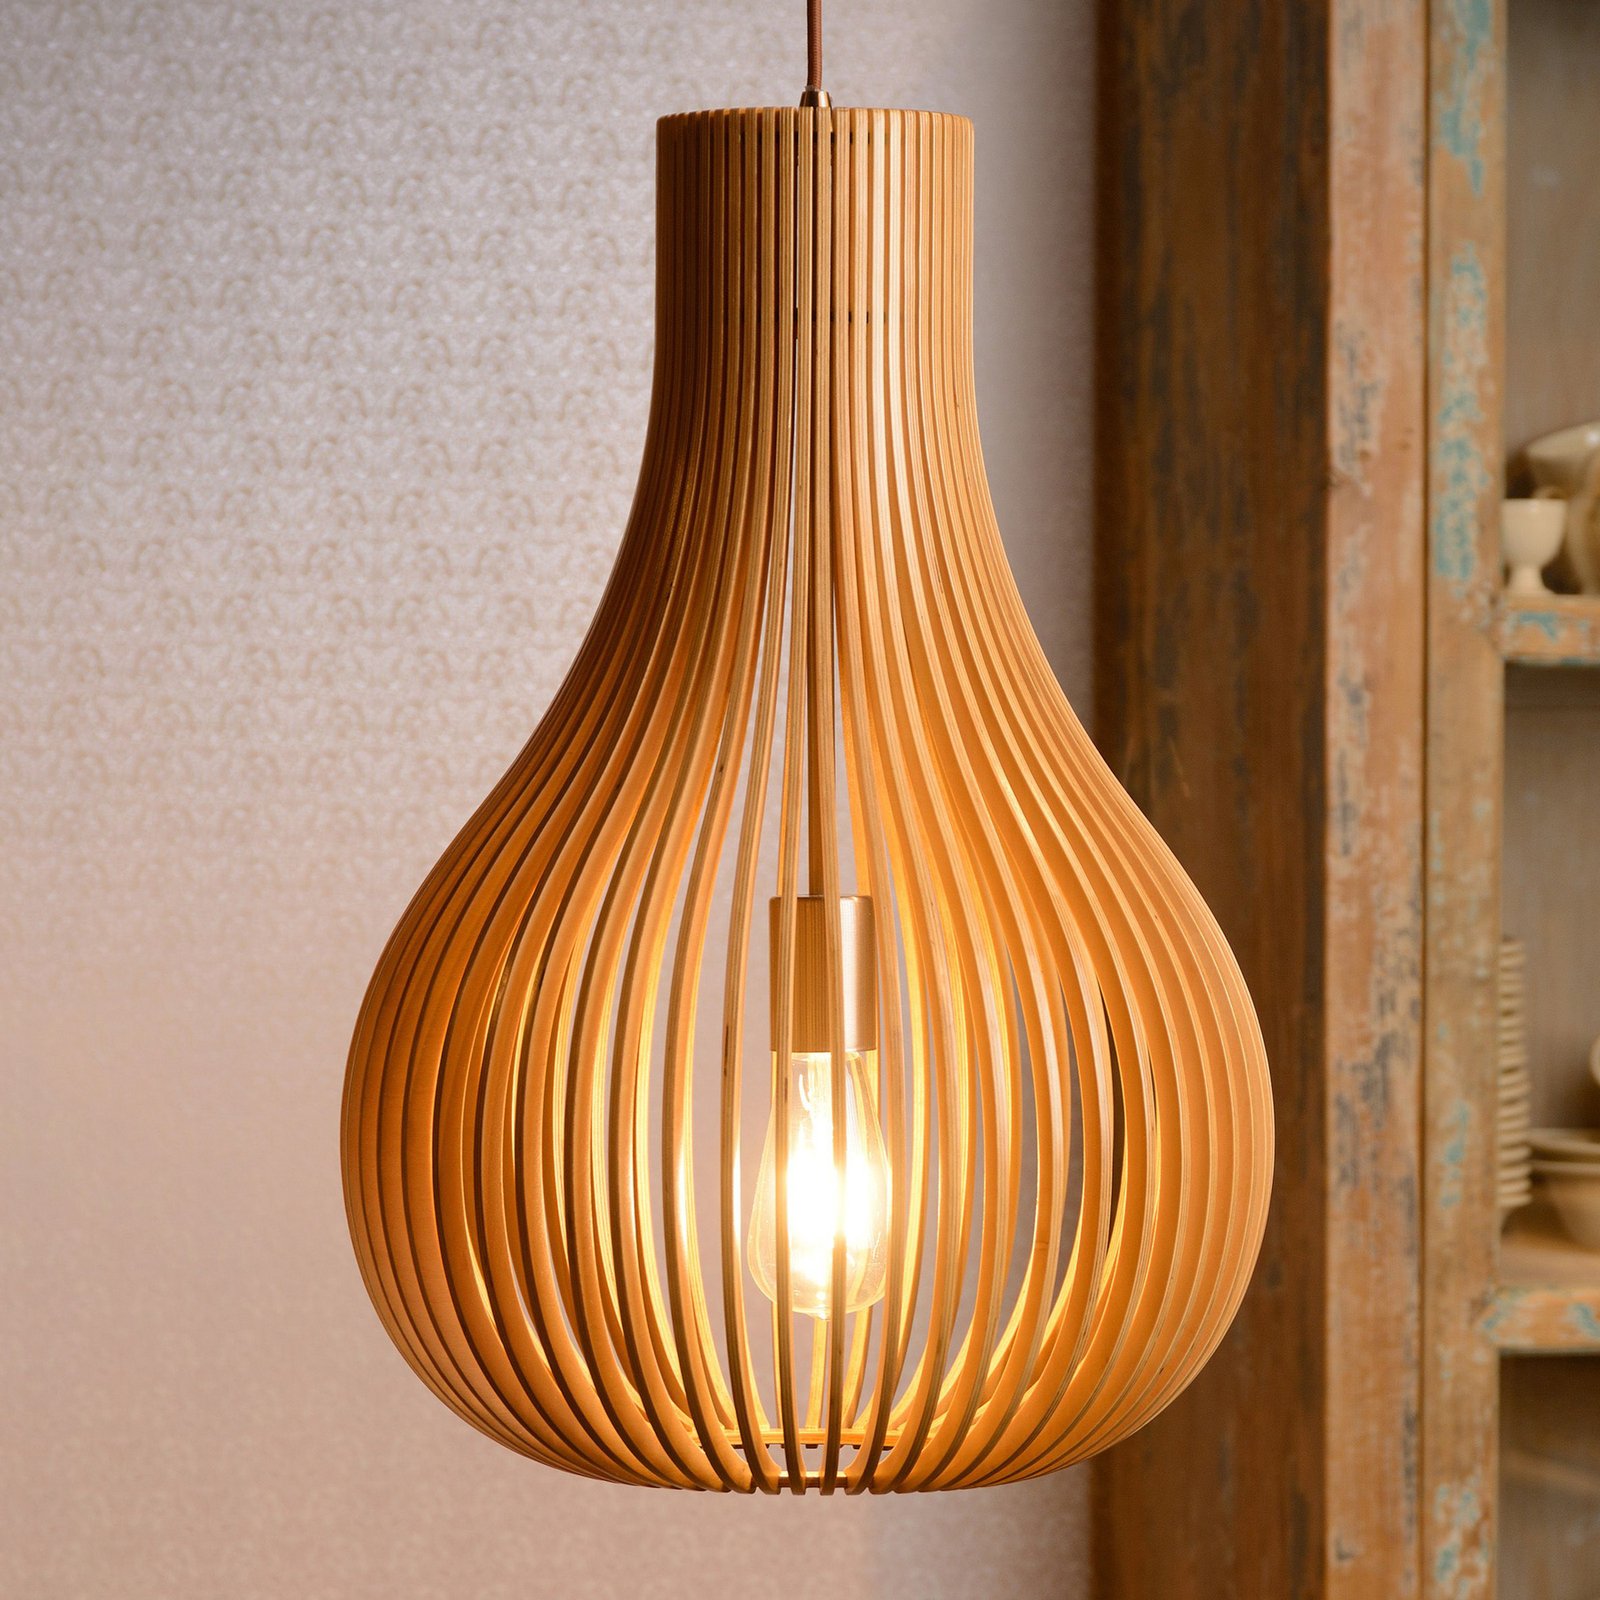 Bodo hanglamp, lichtgekleurd hout